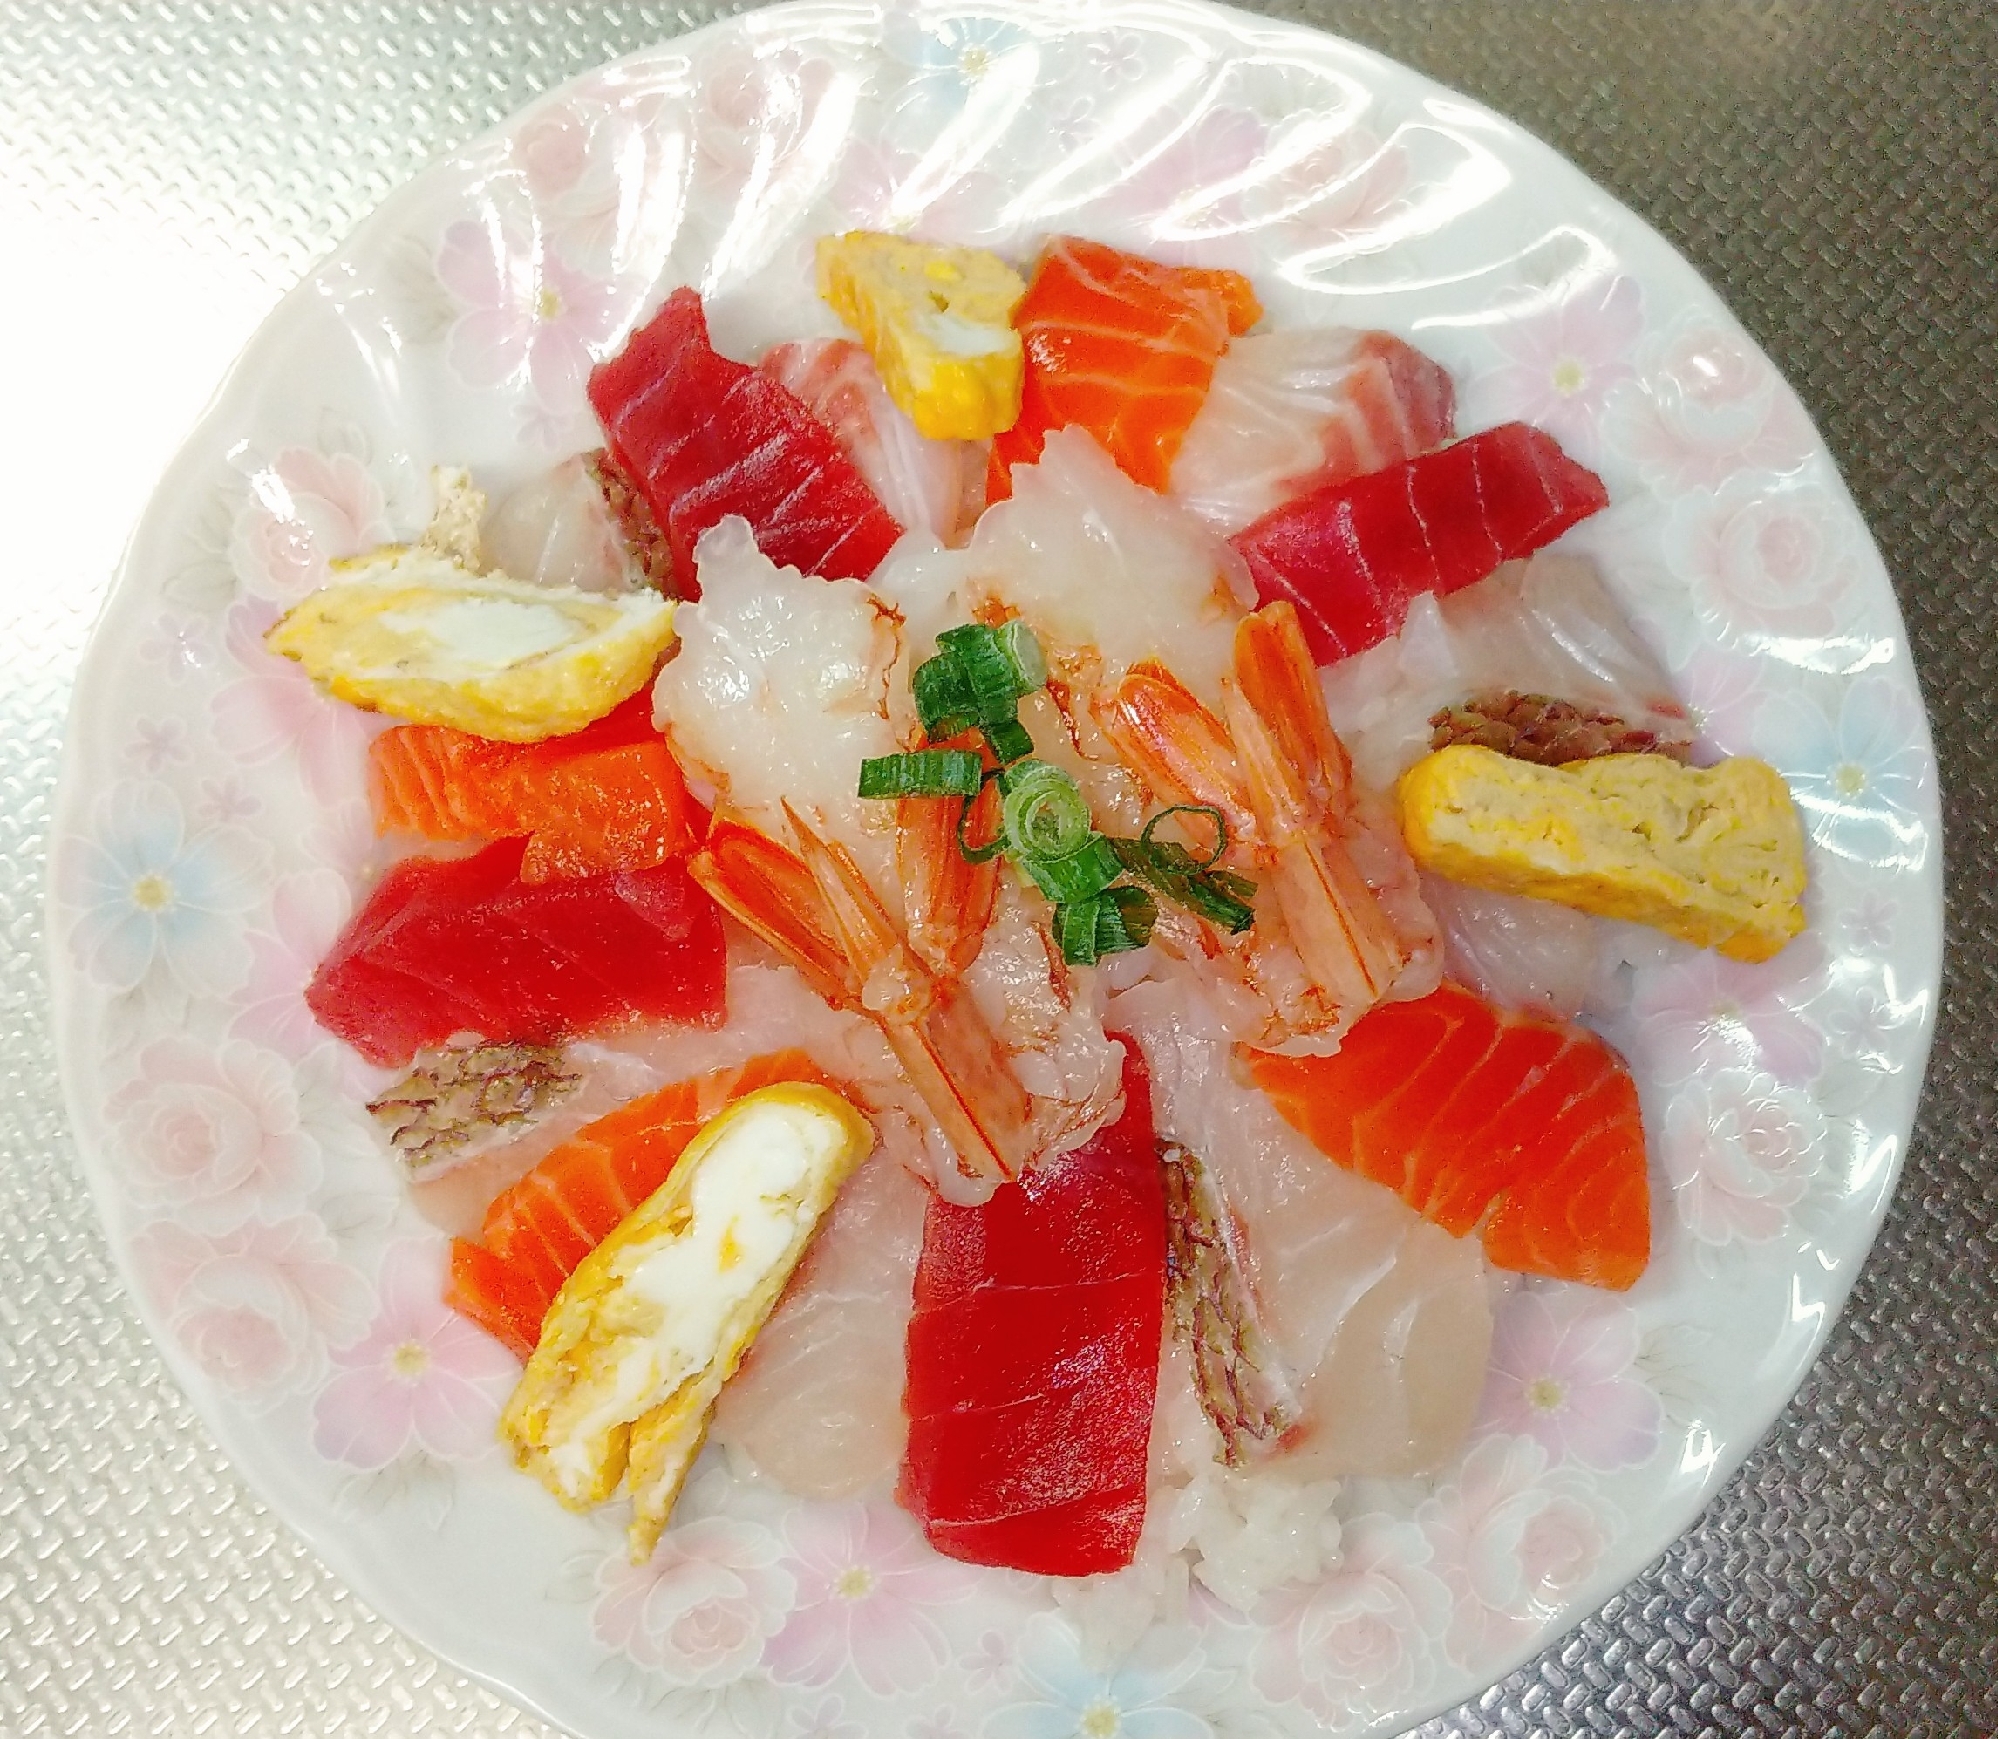 ◈桜鯛たっぷりの海鮮ちらし寿司◈